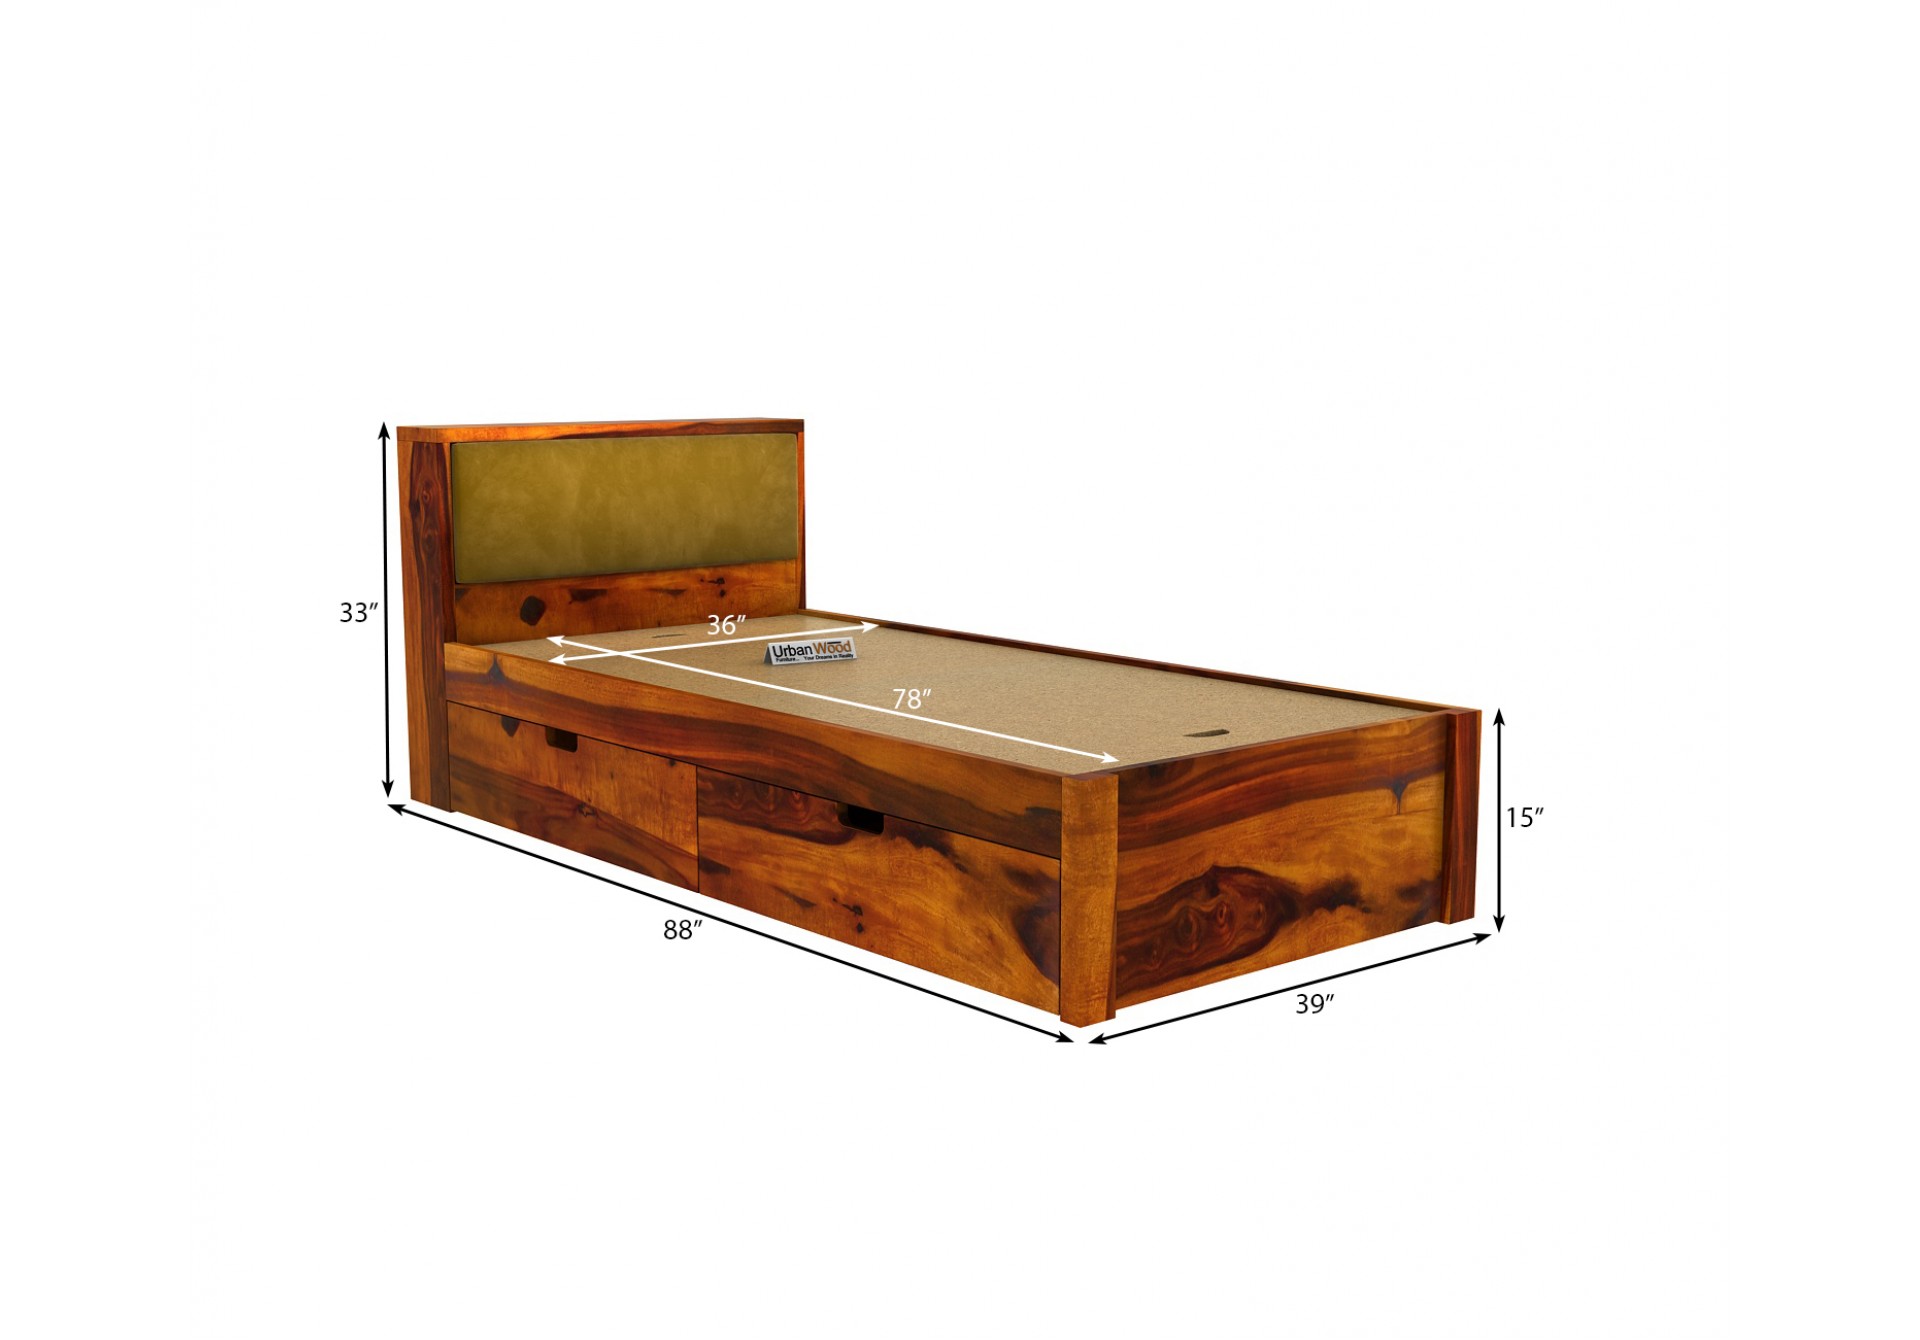 Laverock Single Bed With Storage ( Honey Finish )